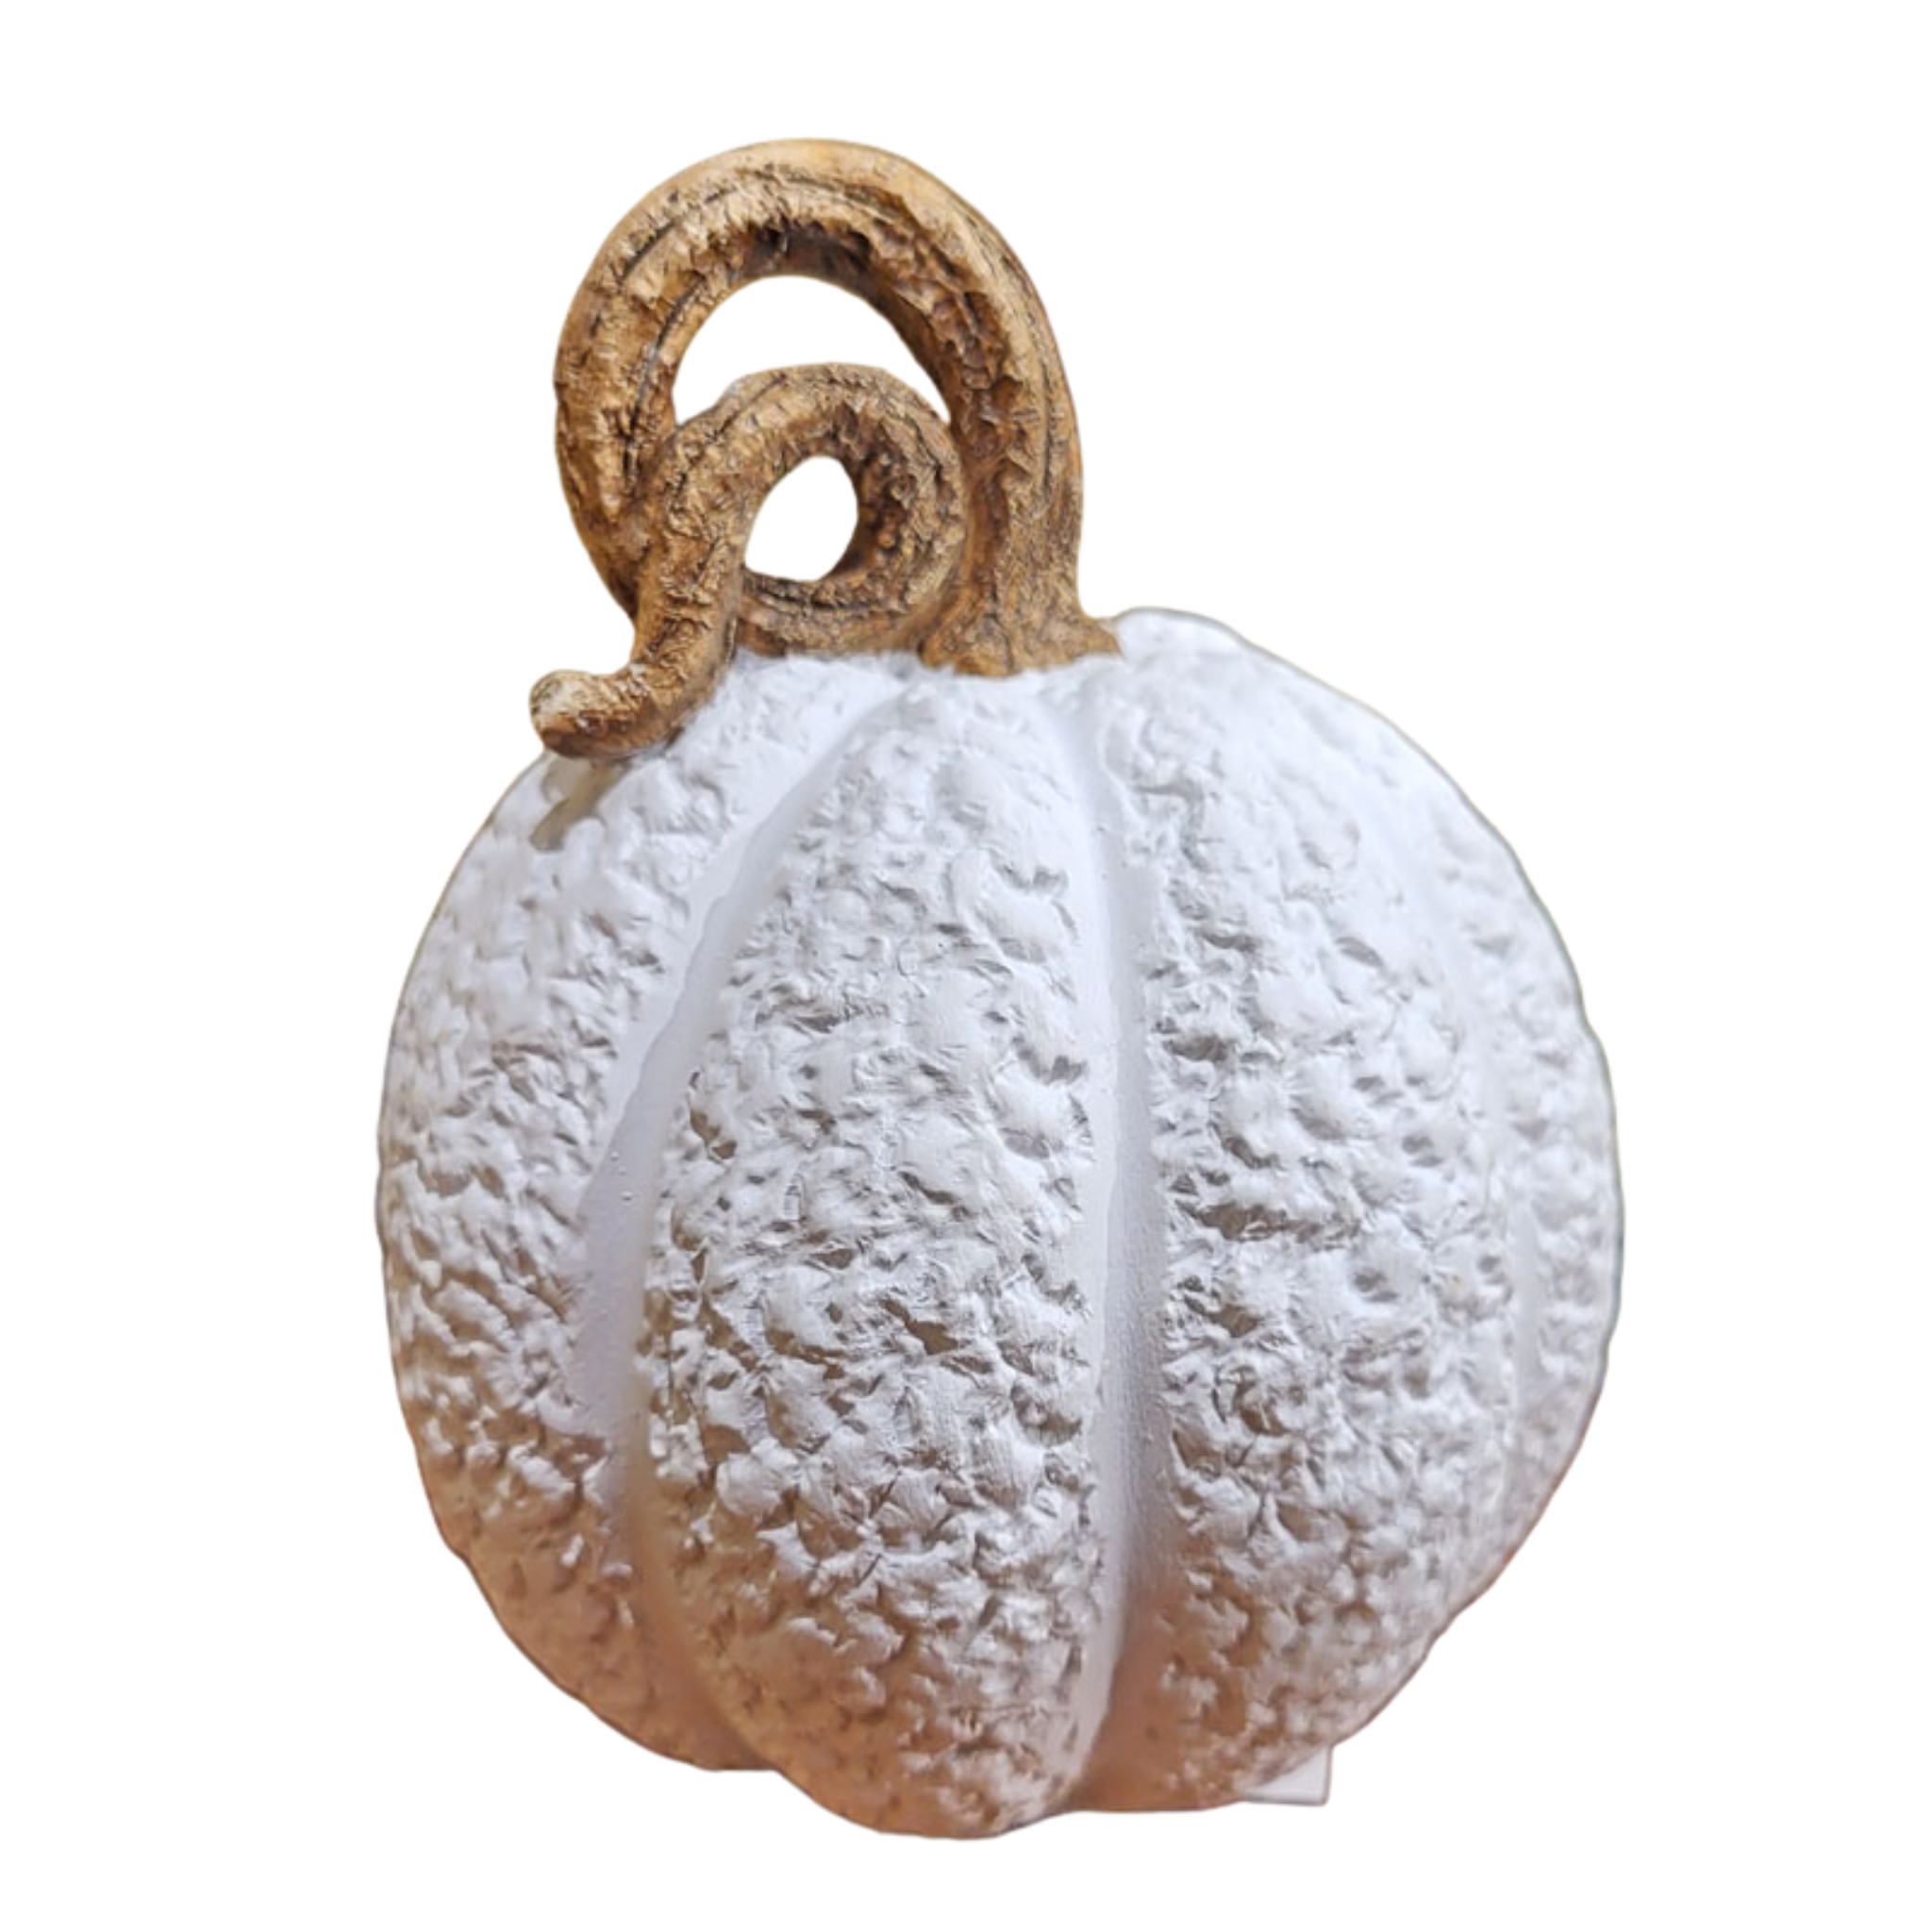 Pumpkin Décor - Small - White - 4.25"H